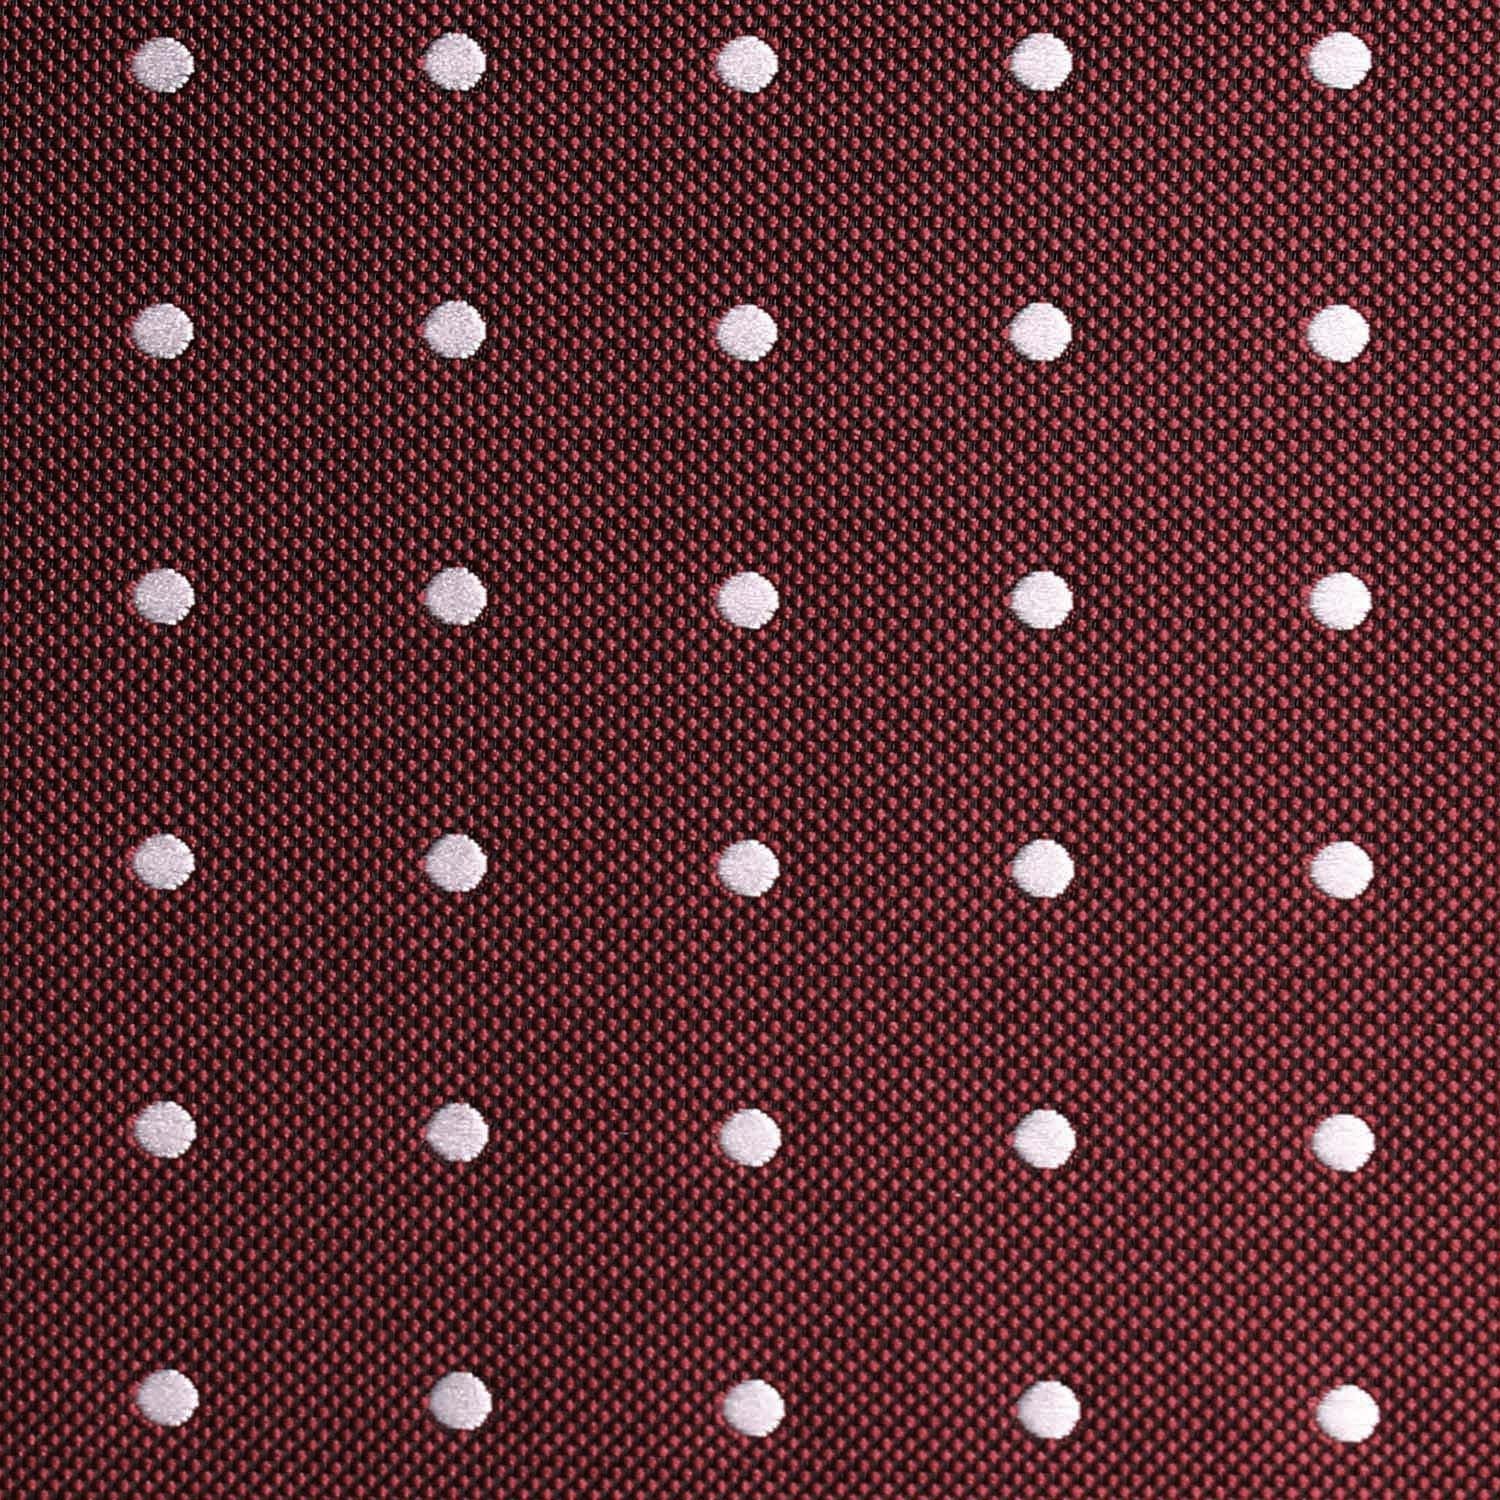 Mahogany Maroon with White Polka Dots Fabric Necktie M123